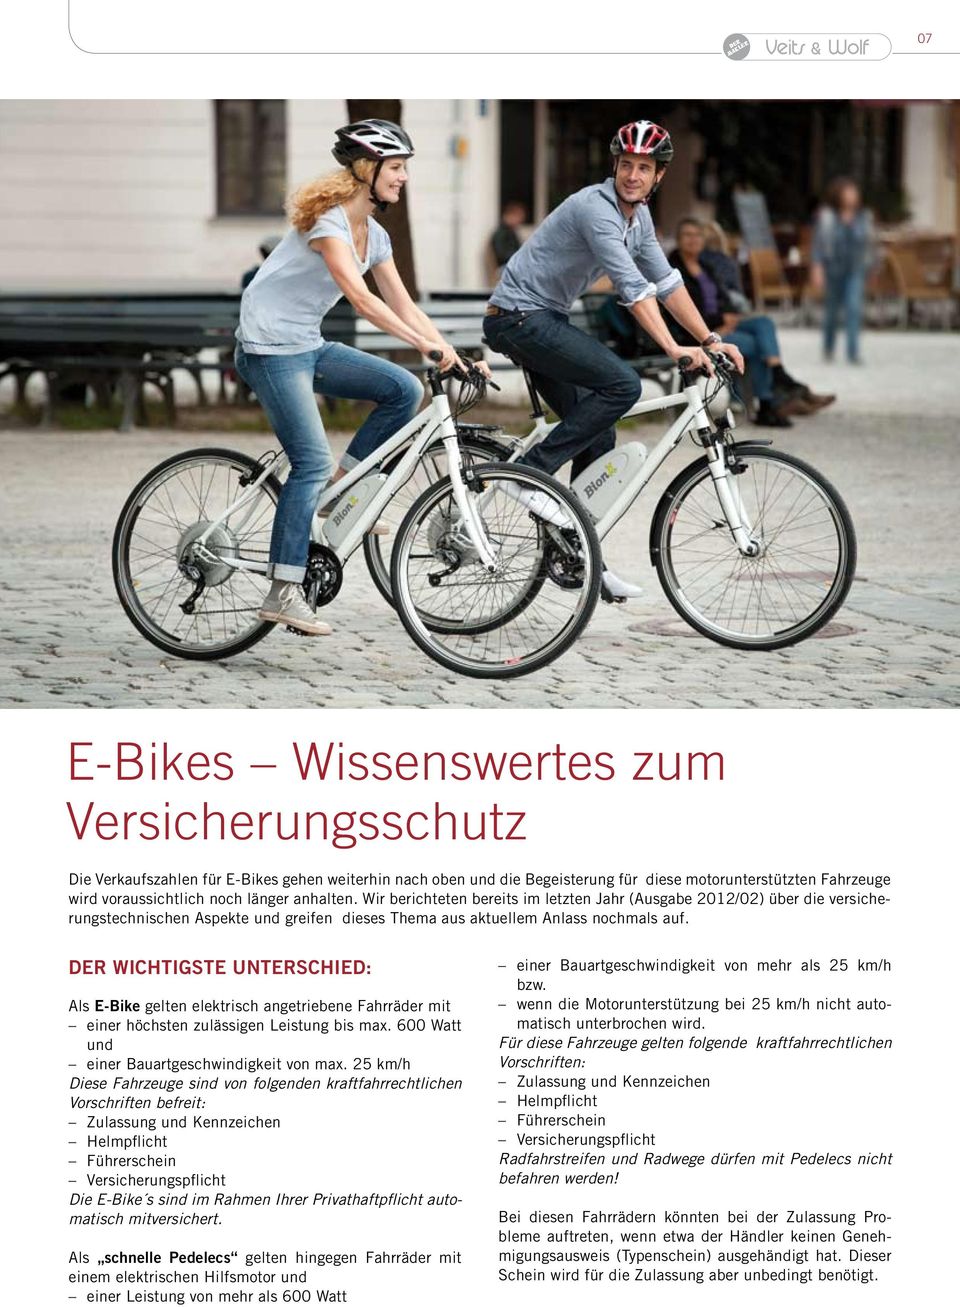 Der wichtigste Unterschied: Als E-Bike gelten elektrisch angetriebene Fahrräder mit einer höchsten zulässigen Leistung bis max. 600 Watt und einer Bauartgeschwindigkeit von max.